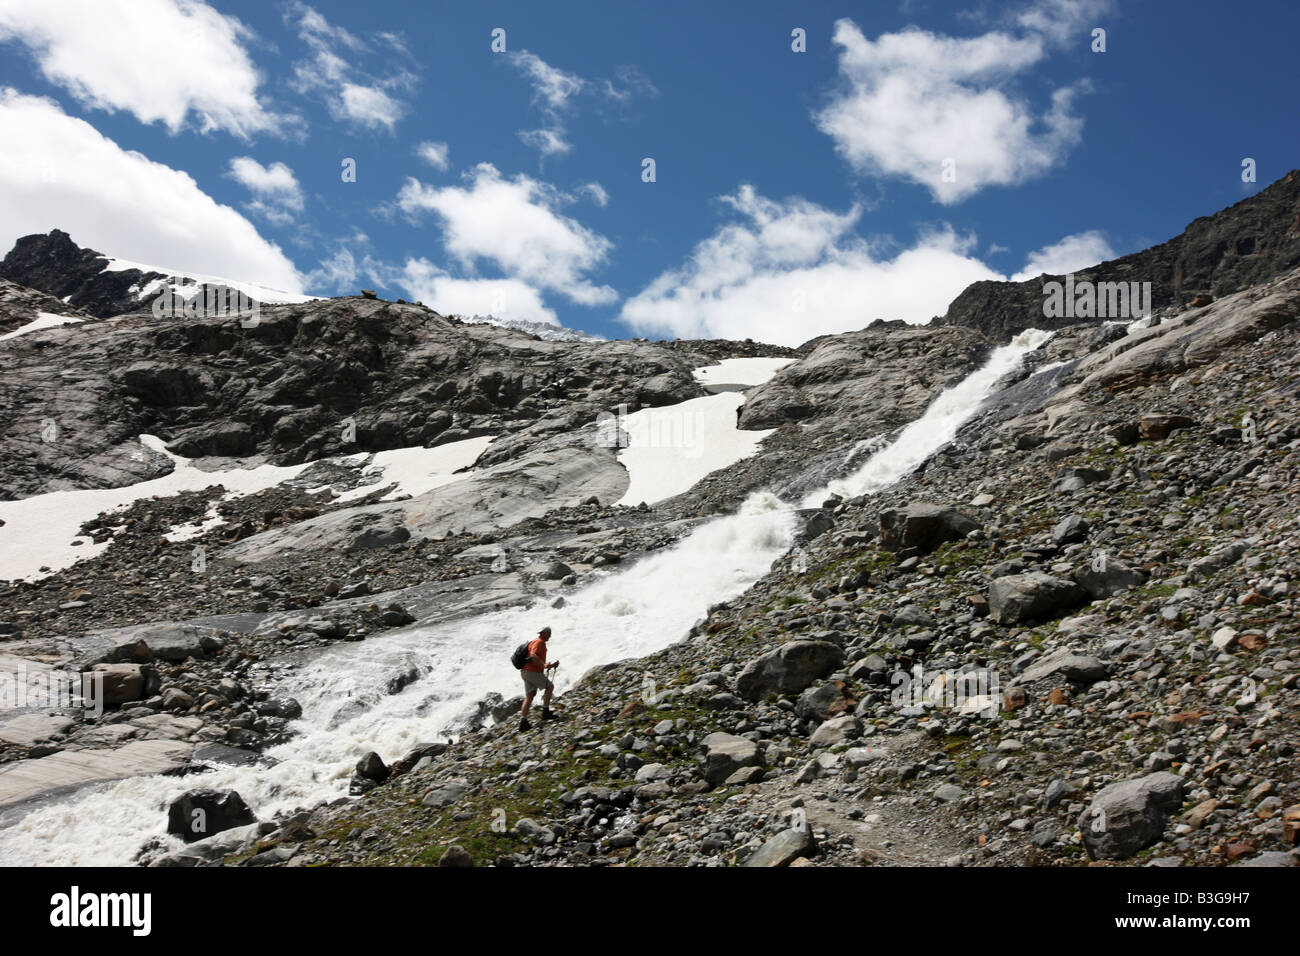 AUT, Austria, Tyrol: Stubaital, Stubai Valley. Hiking in the mountains to the Stubai glacier. Stock Photo